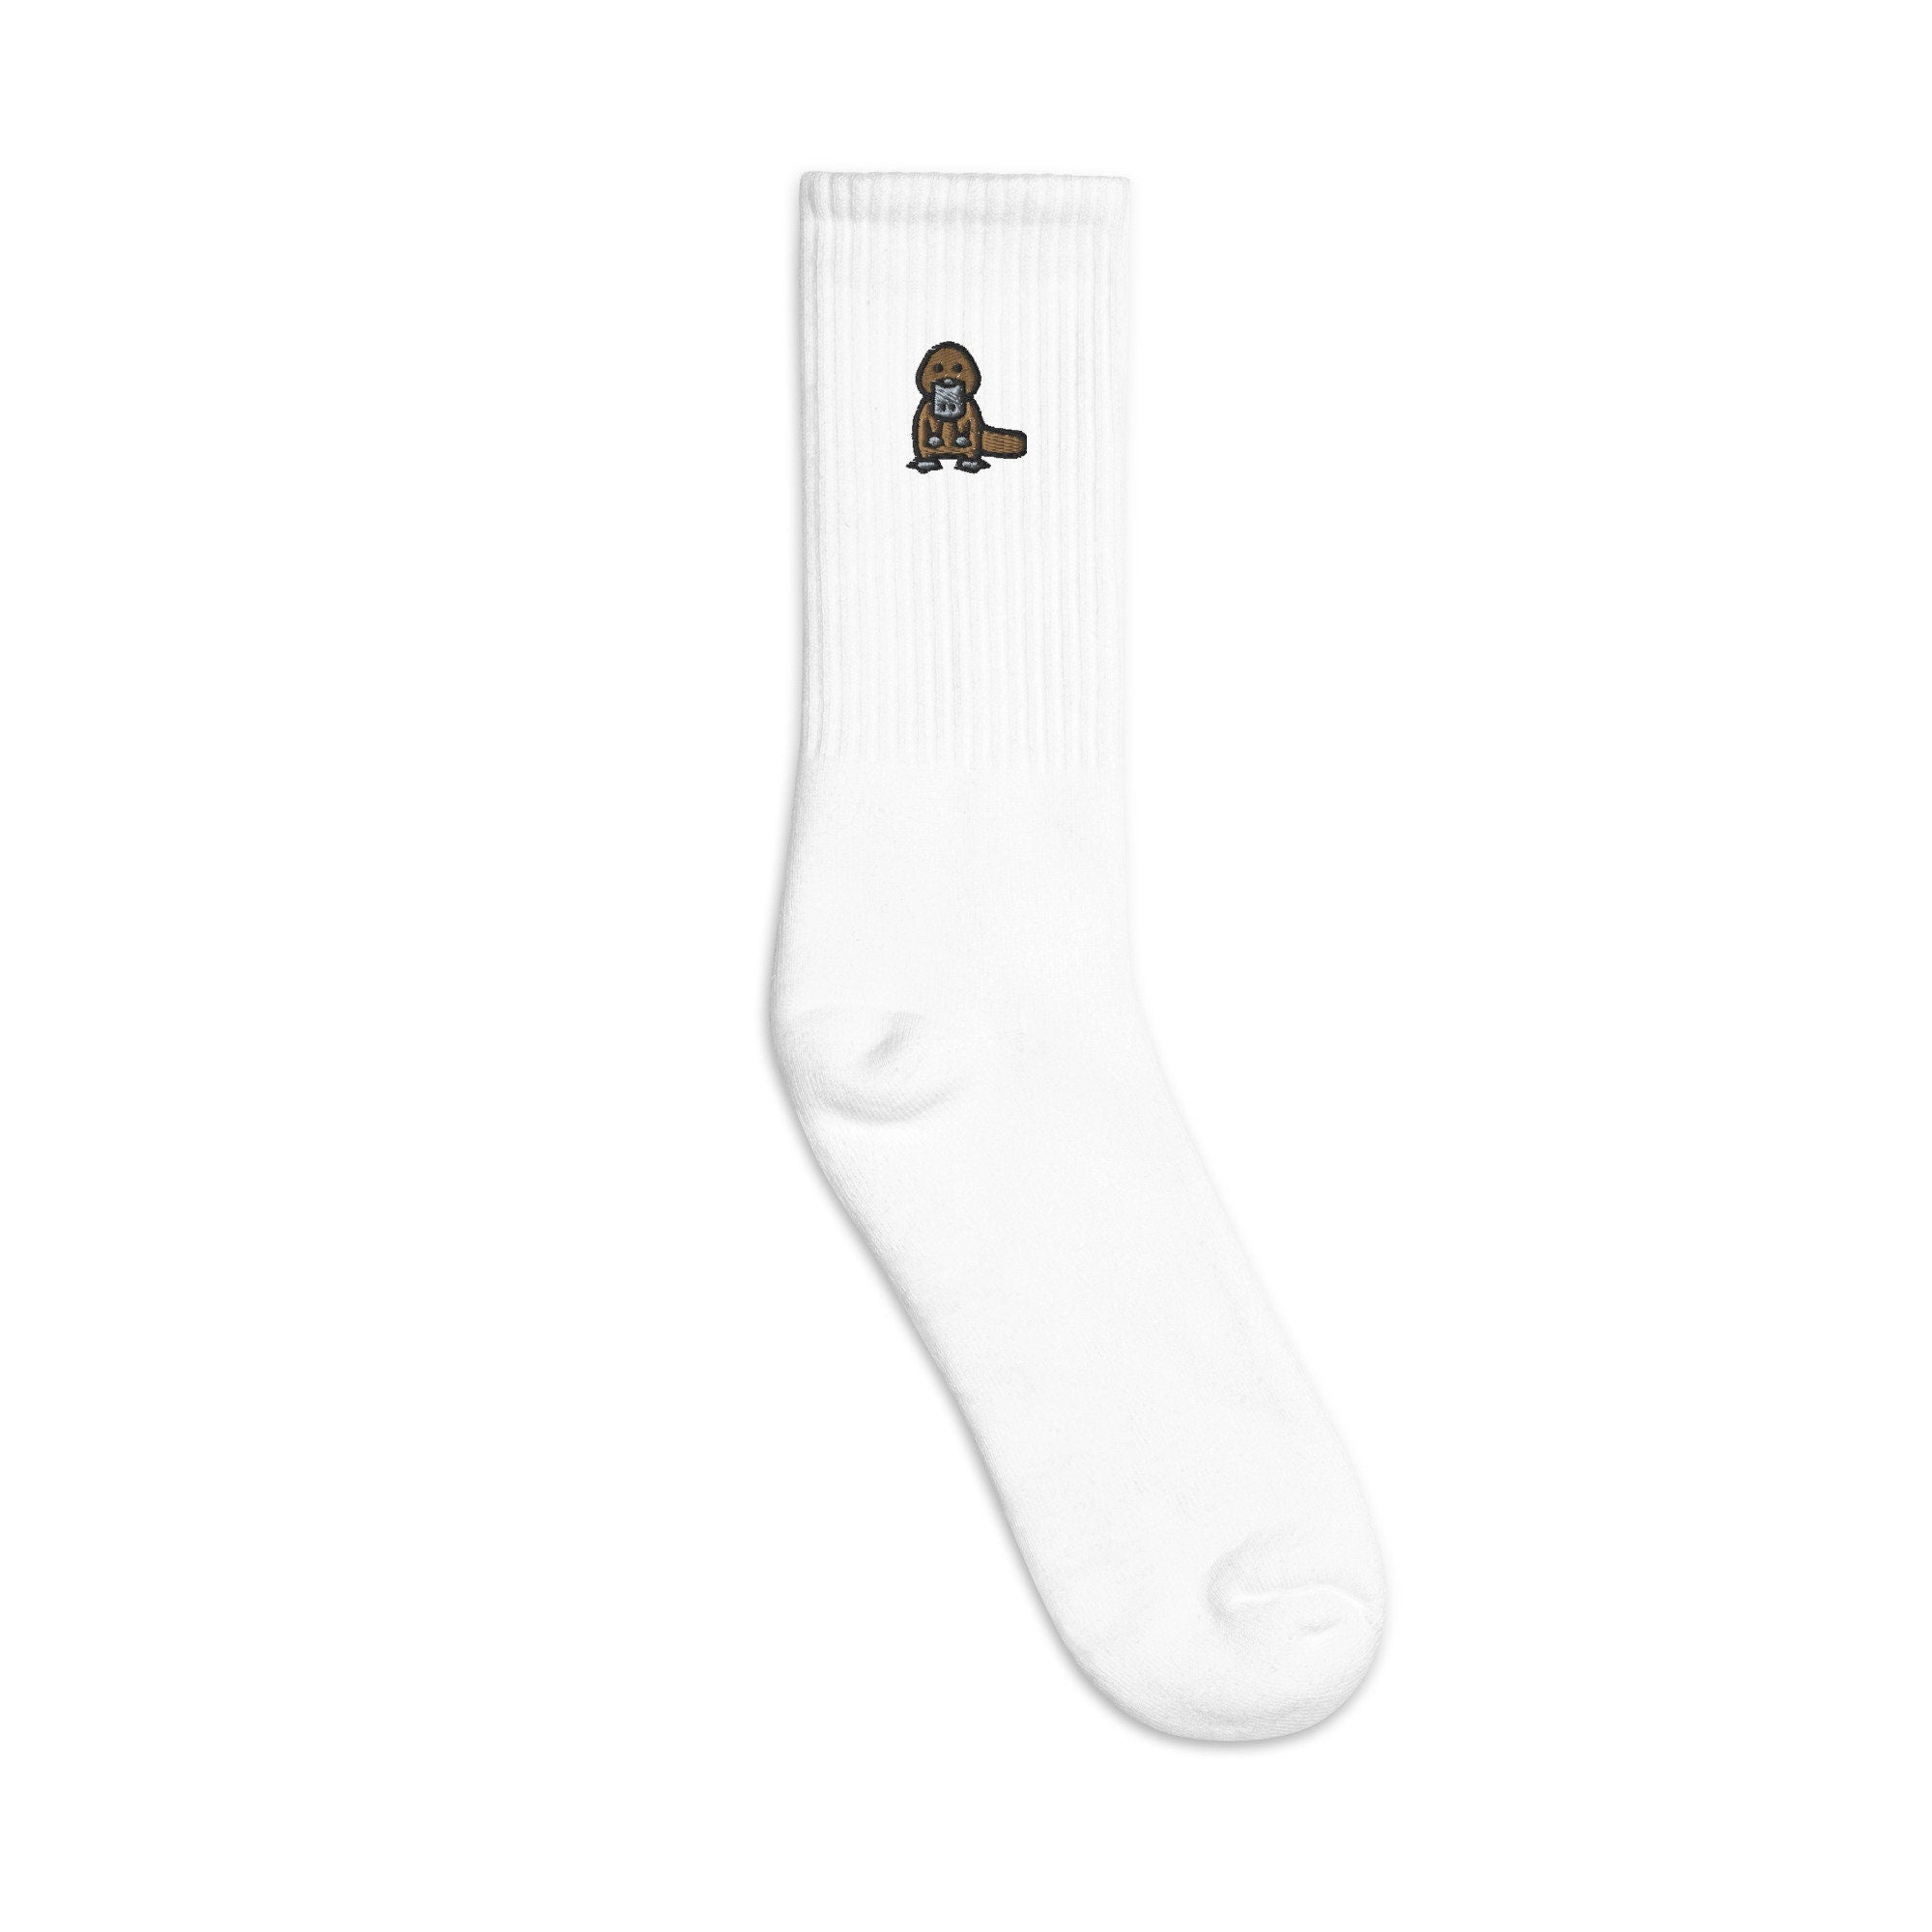 Platypus Embroidered Socks, Premium Embroidered Socks, Long Socks Gift - Multiple Colors